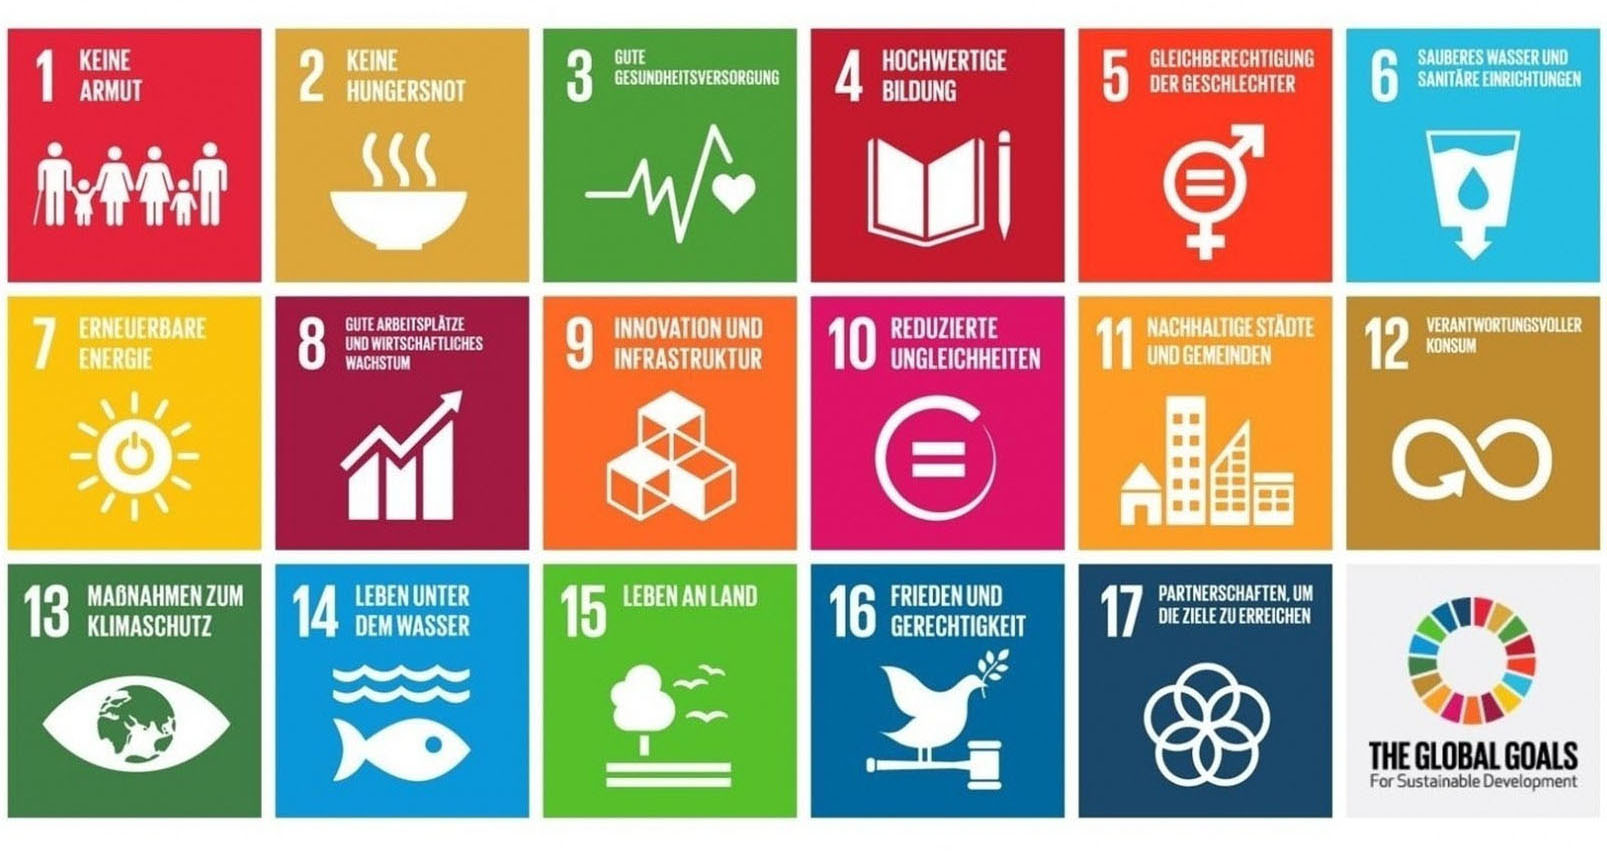 Die Nachhaltigkeitsziele der Agenda 2030 im Überblick.